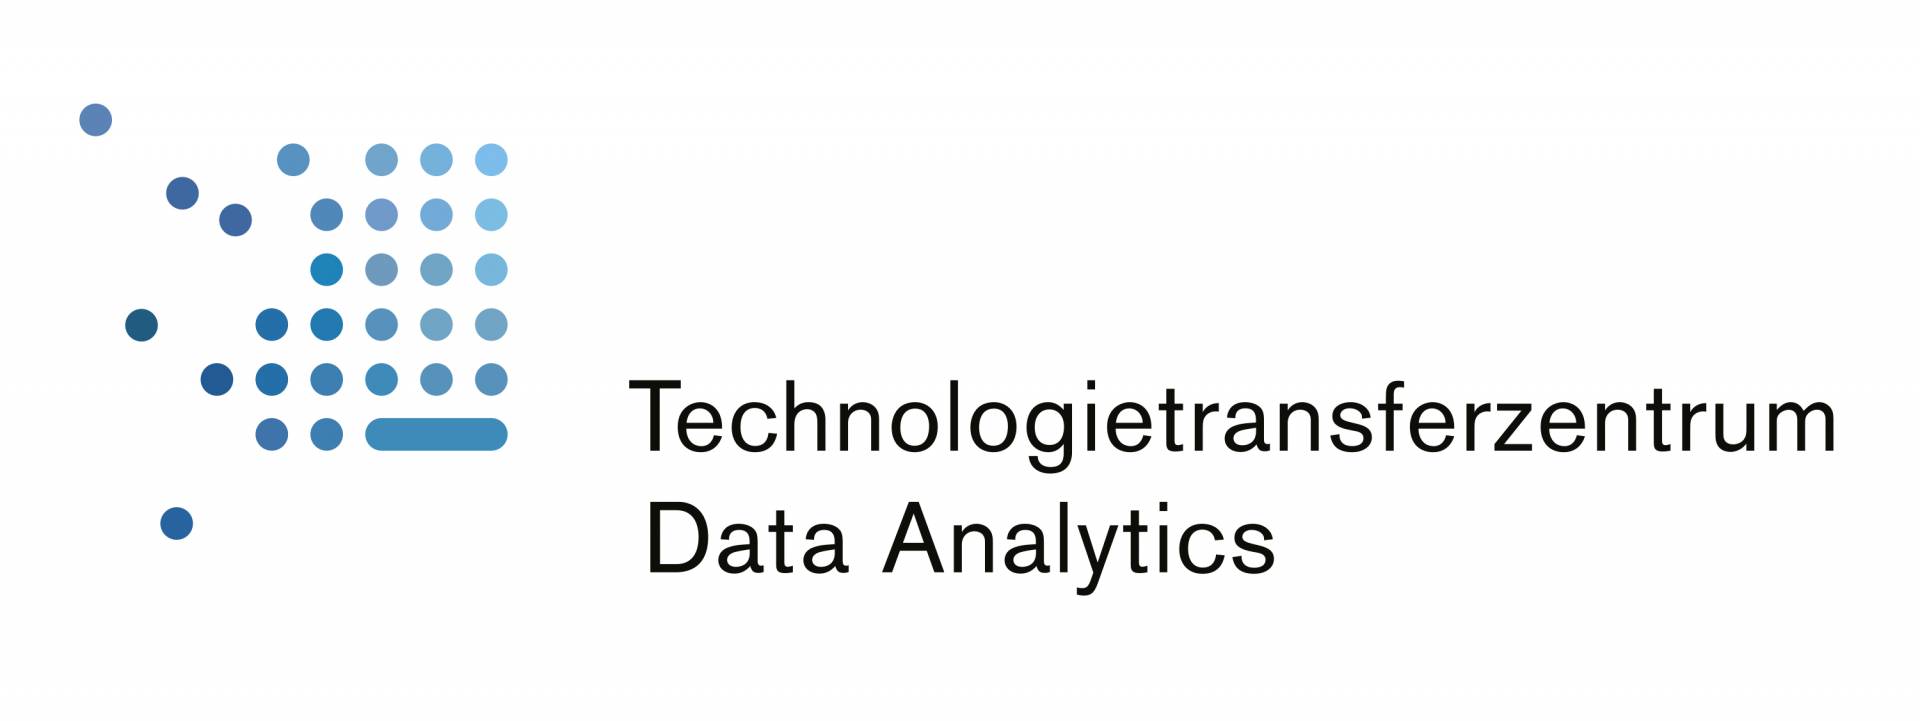 Das Technologietransferzentrum (TTZ) Data Analytics in Donauwörth unterstützt die Industrie bei der Digitalisierung. Bringen wir System ins Datenchaos.